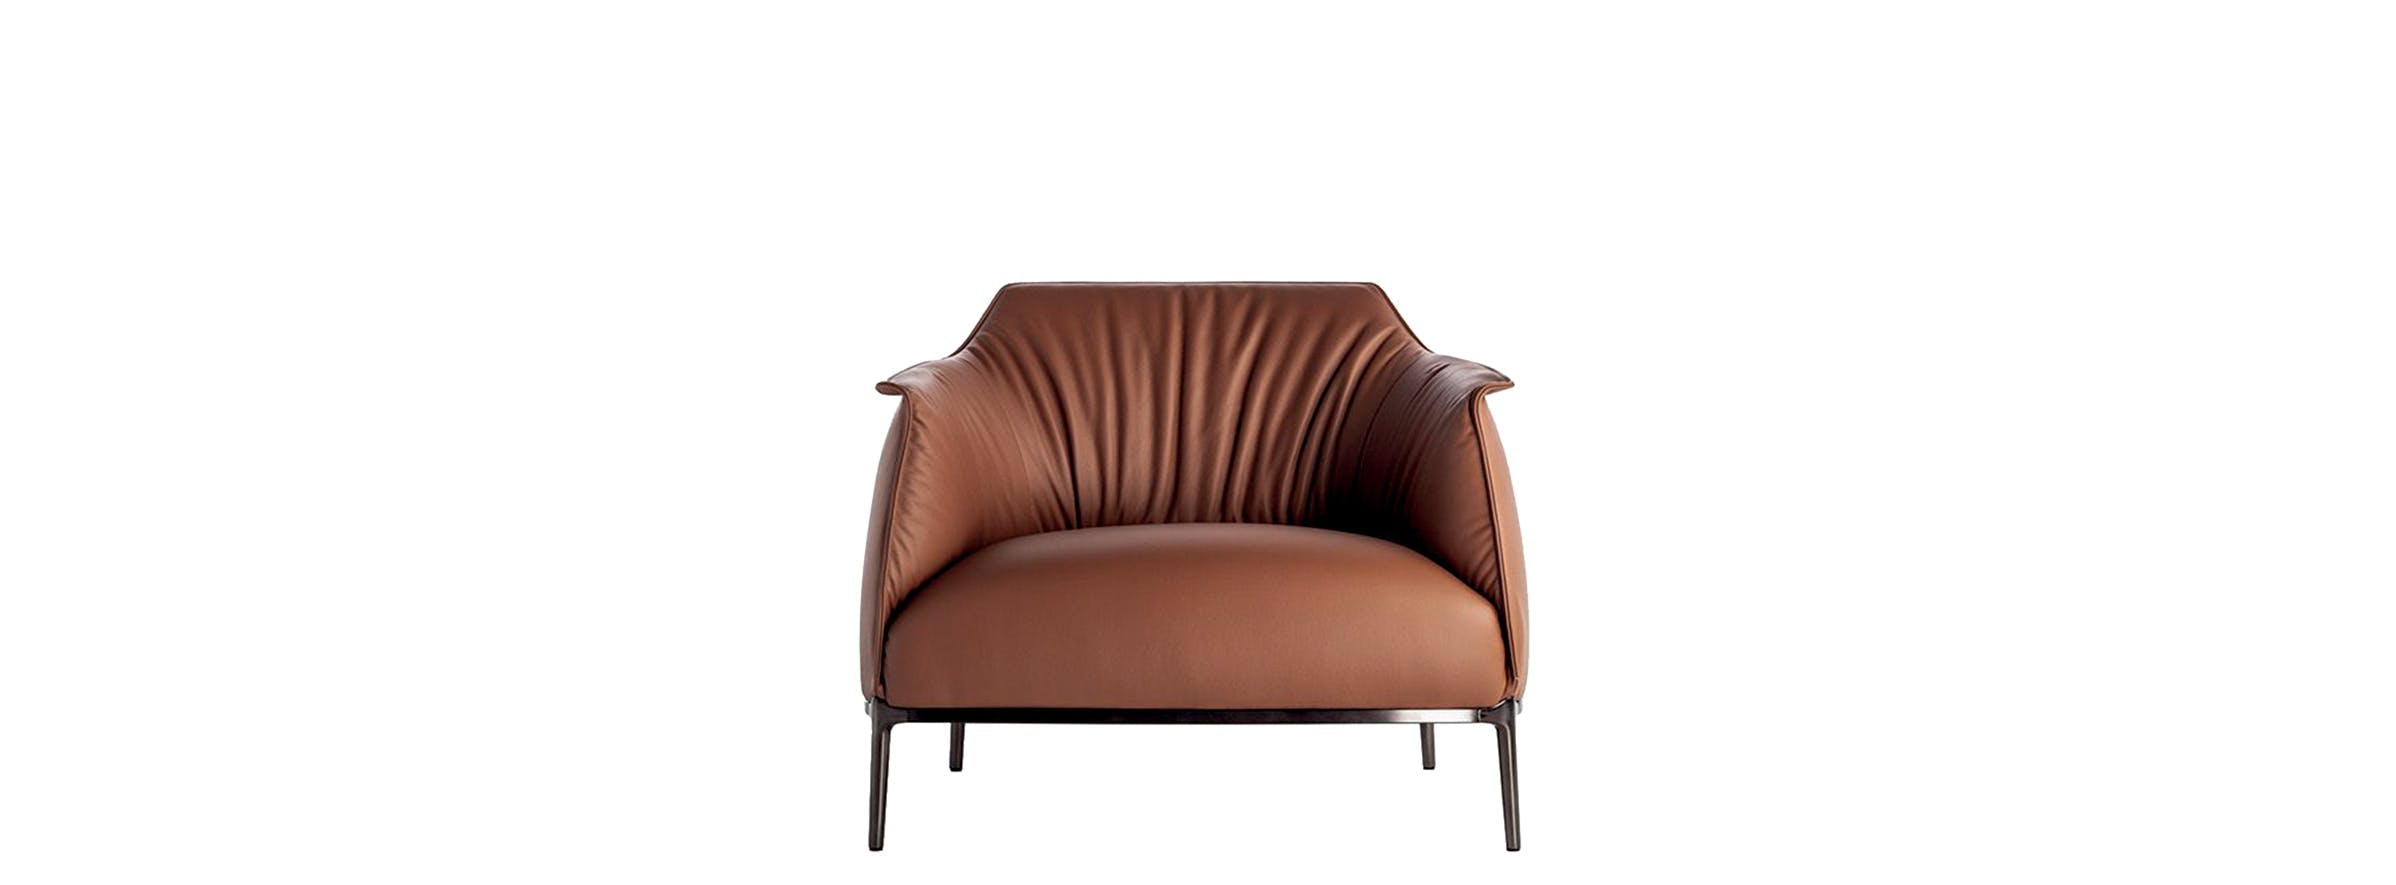 furniture chair armchair